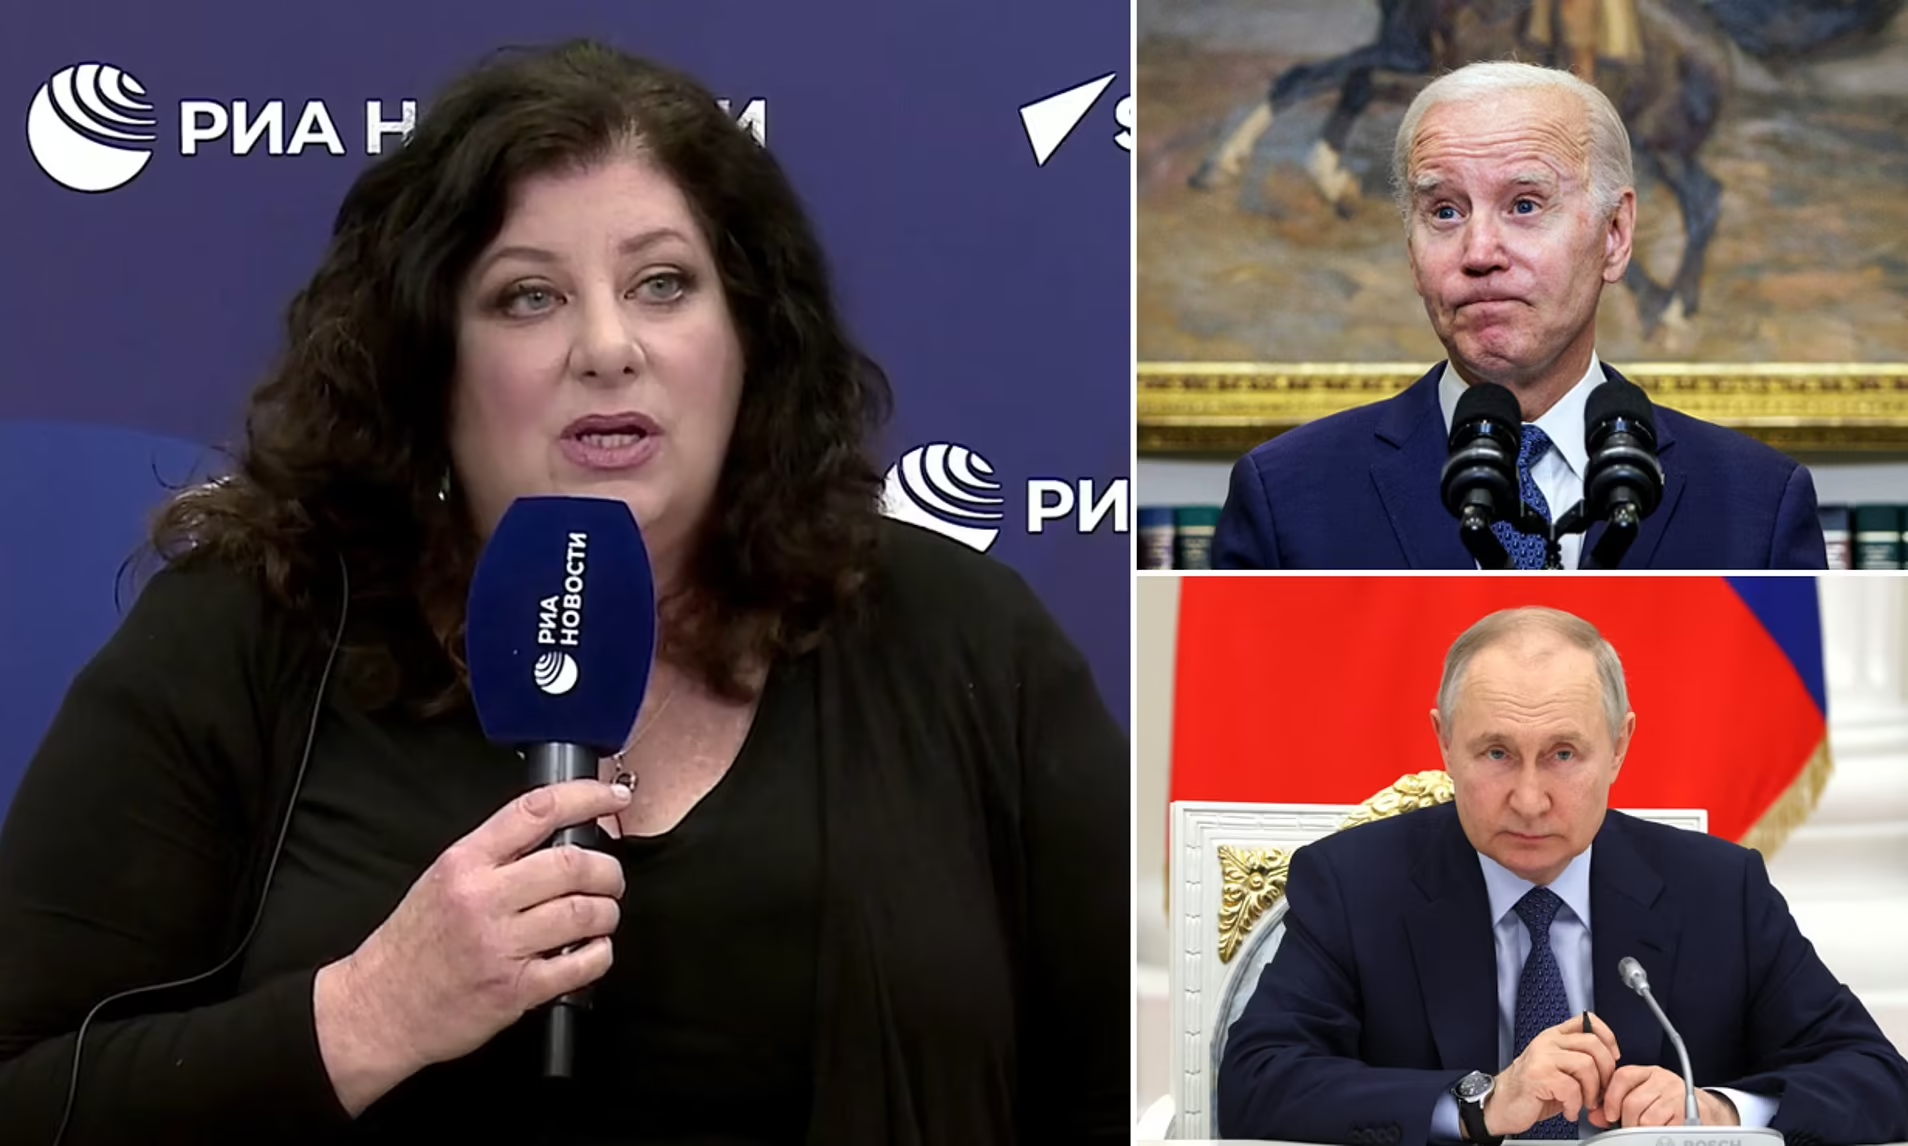 Biden sex assault accuser Tara Reade requests Russian citizenship from Putin